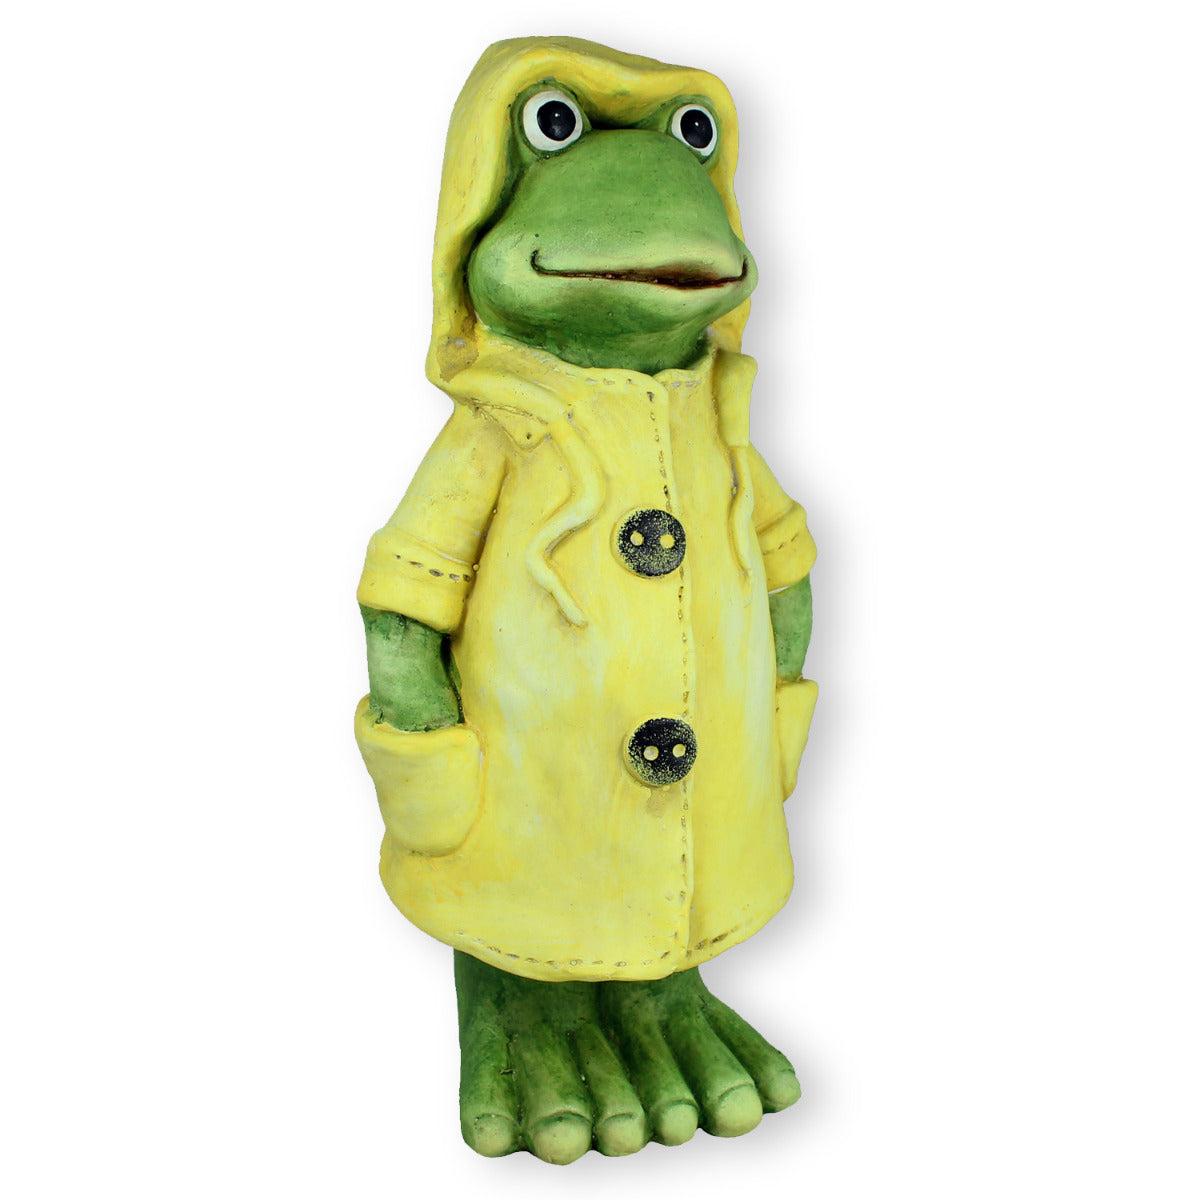 Frosch Dekofigur stehend mit Mantel in gelb Gartenfigur Frosch Froschfigur Teichdeko